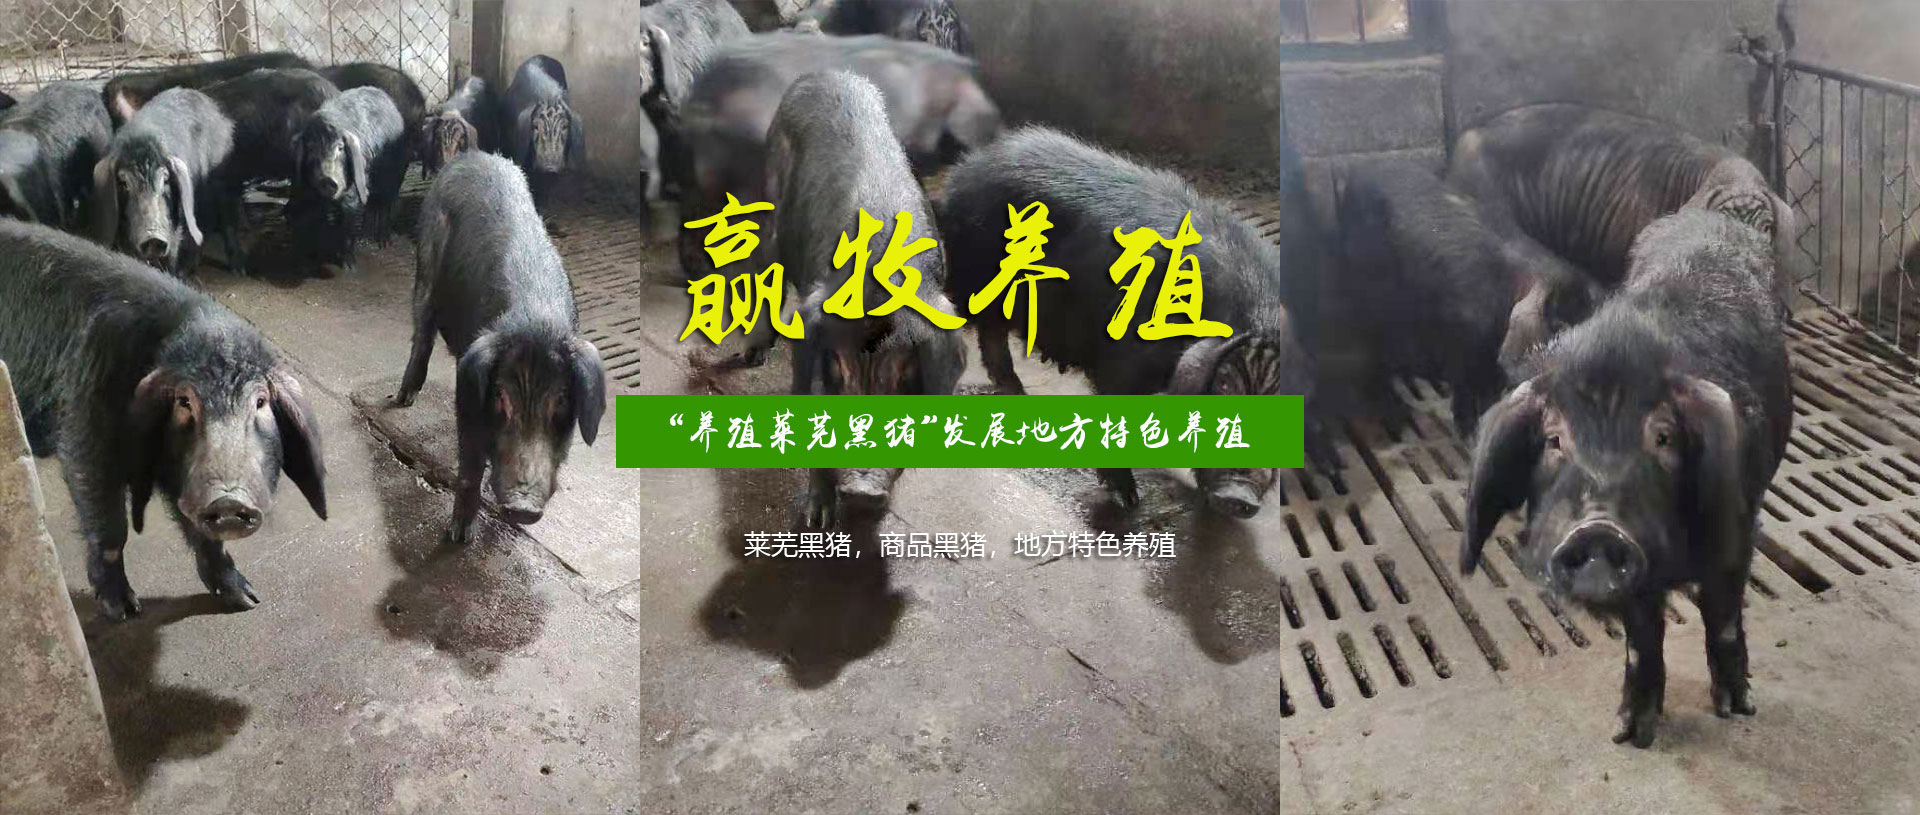 济南市钢城区赢牧黑猪养殖场